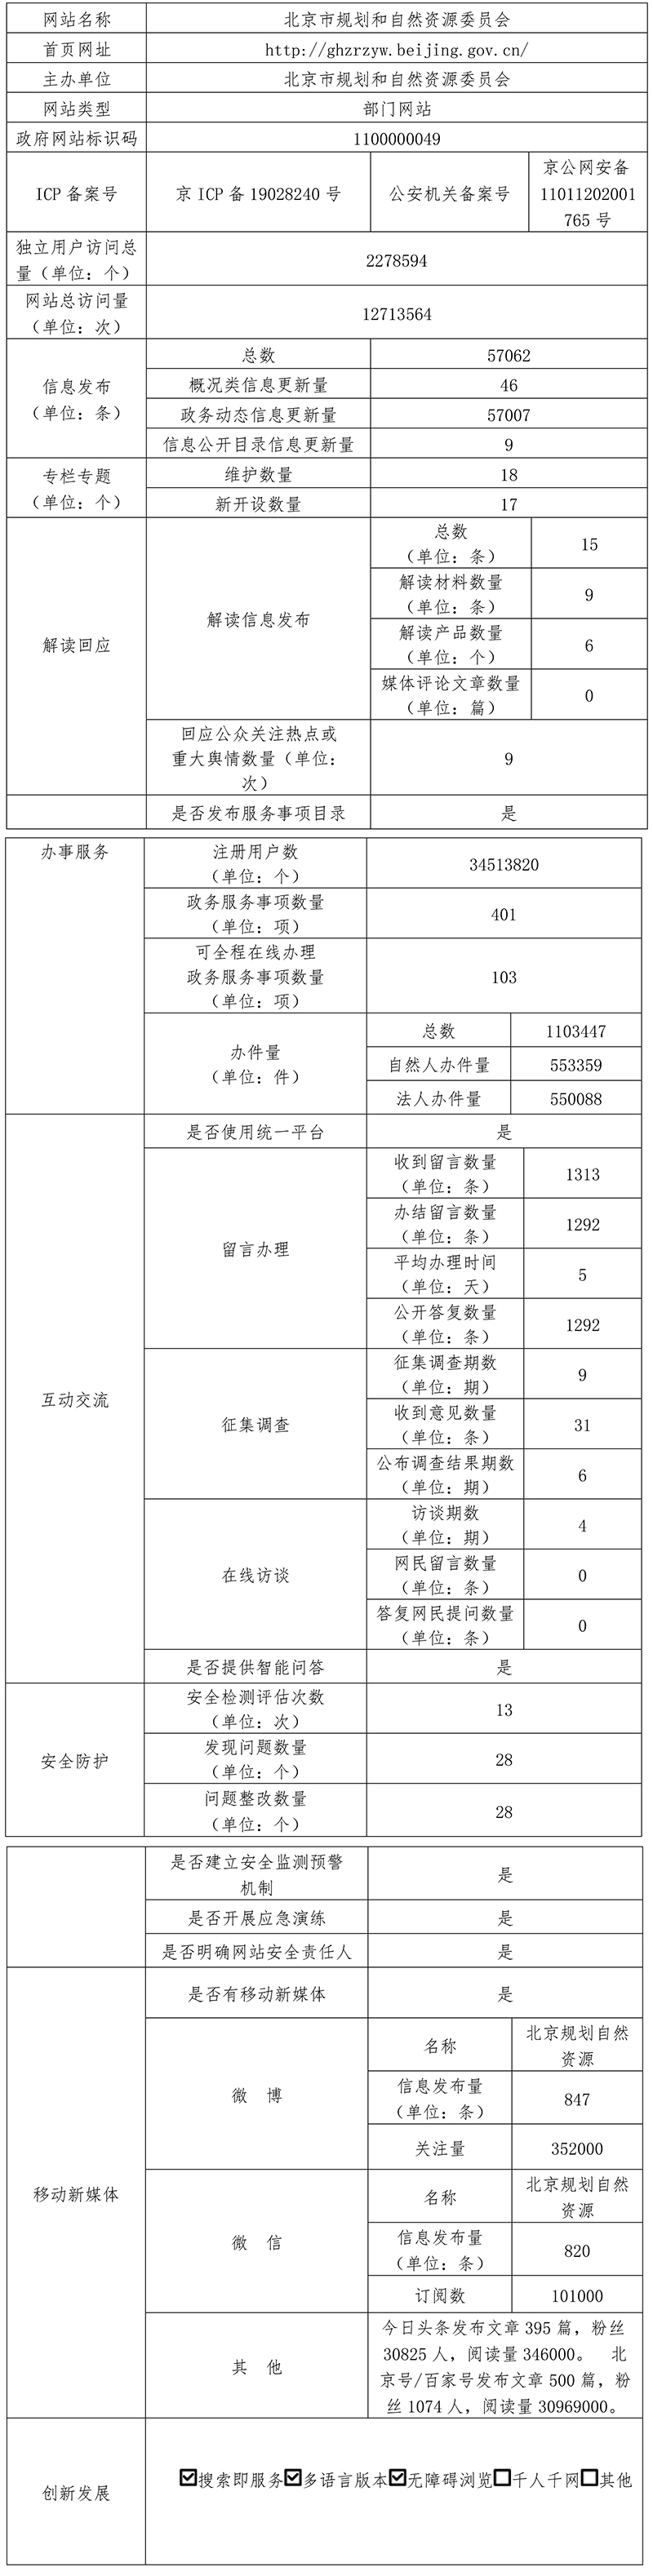 北京市規劃和自然資源委員會2021年政府網站年度工作報表